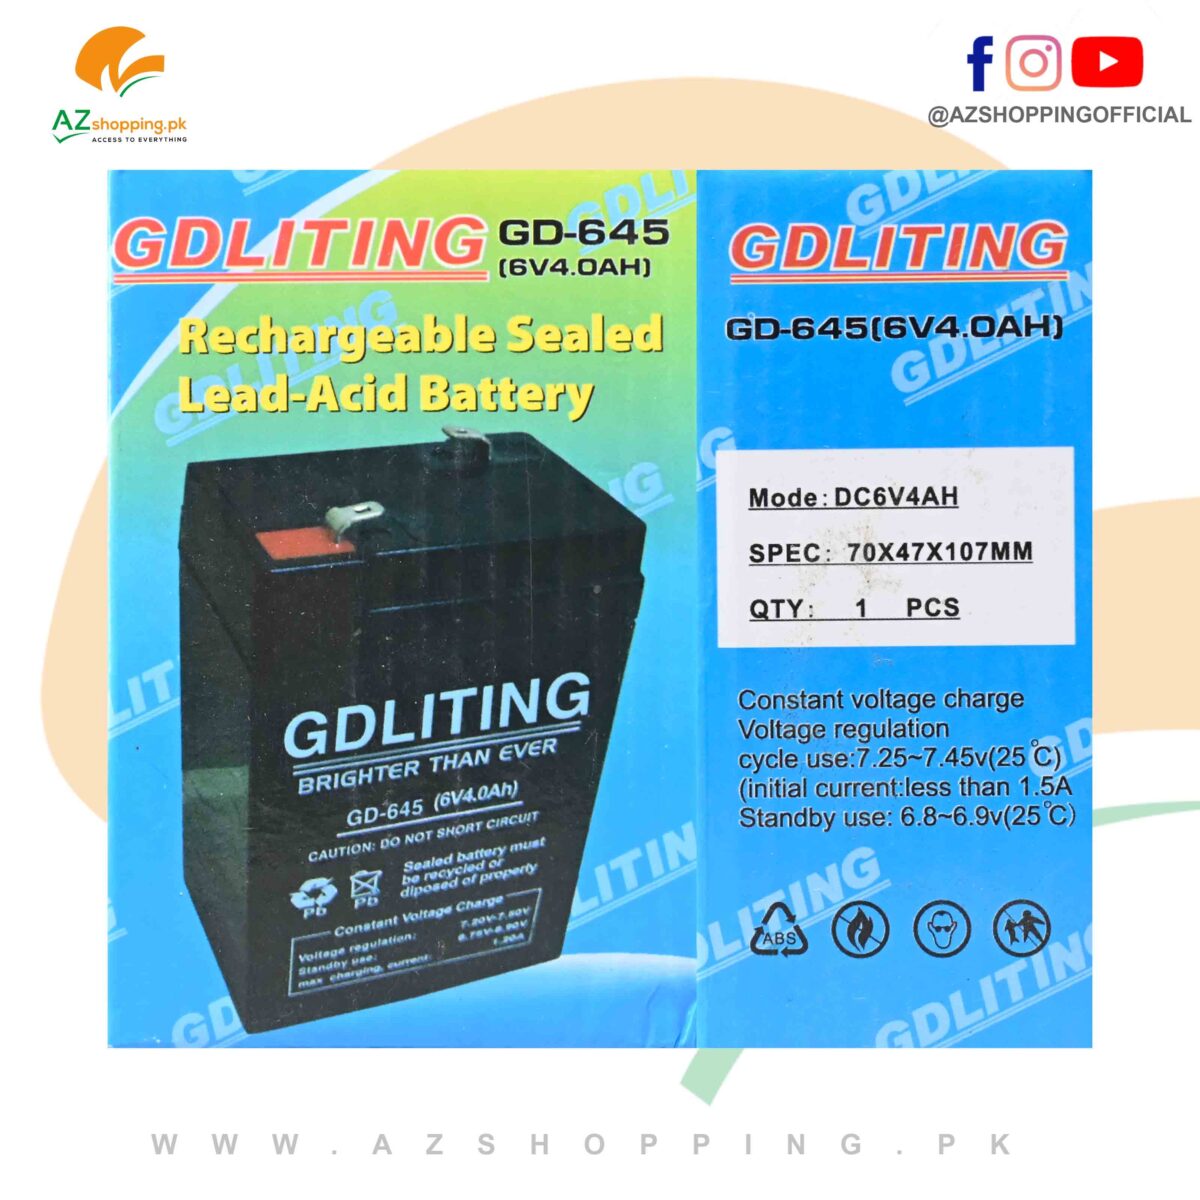 GDLITING – Rechargeable Sealed Lead-Acid Battery - Model: GD-645 (6V4.OAH)